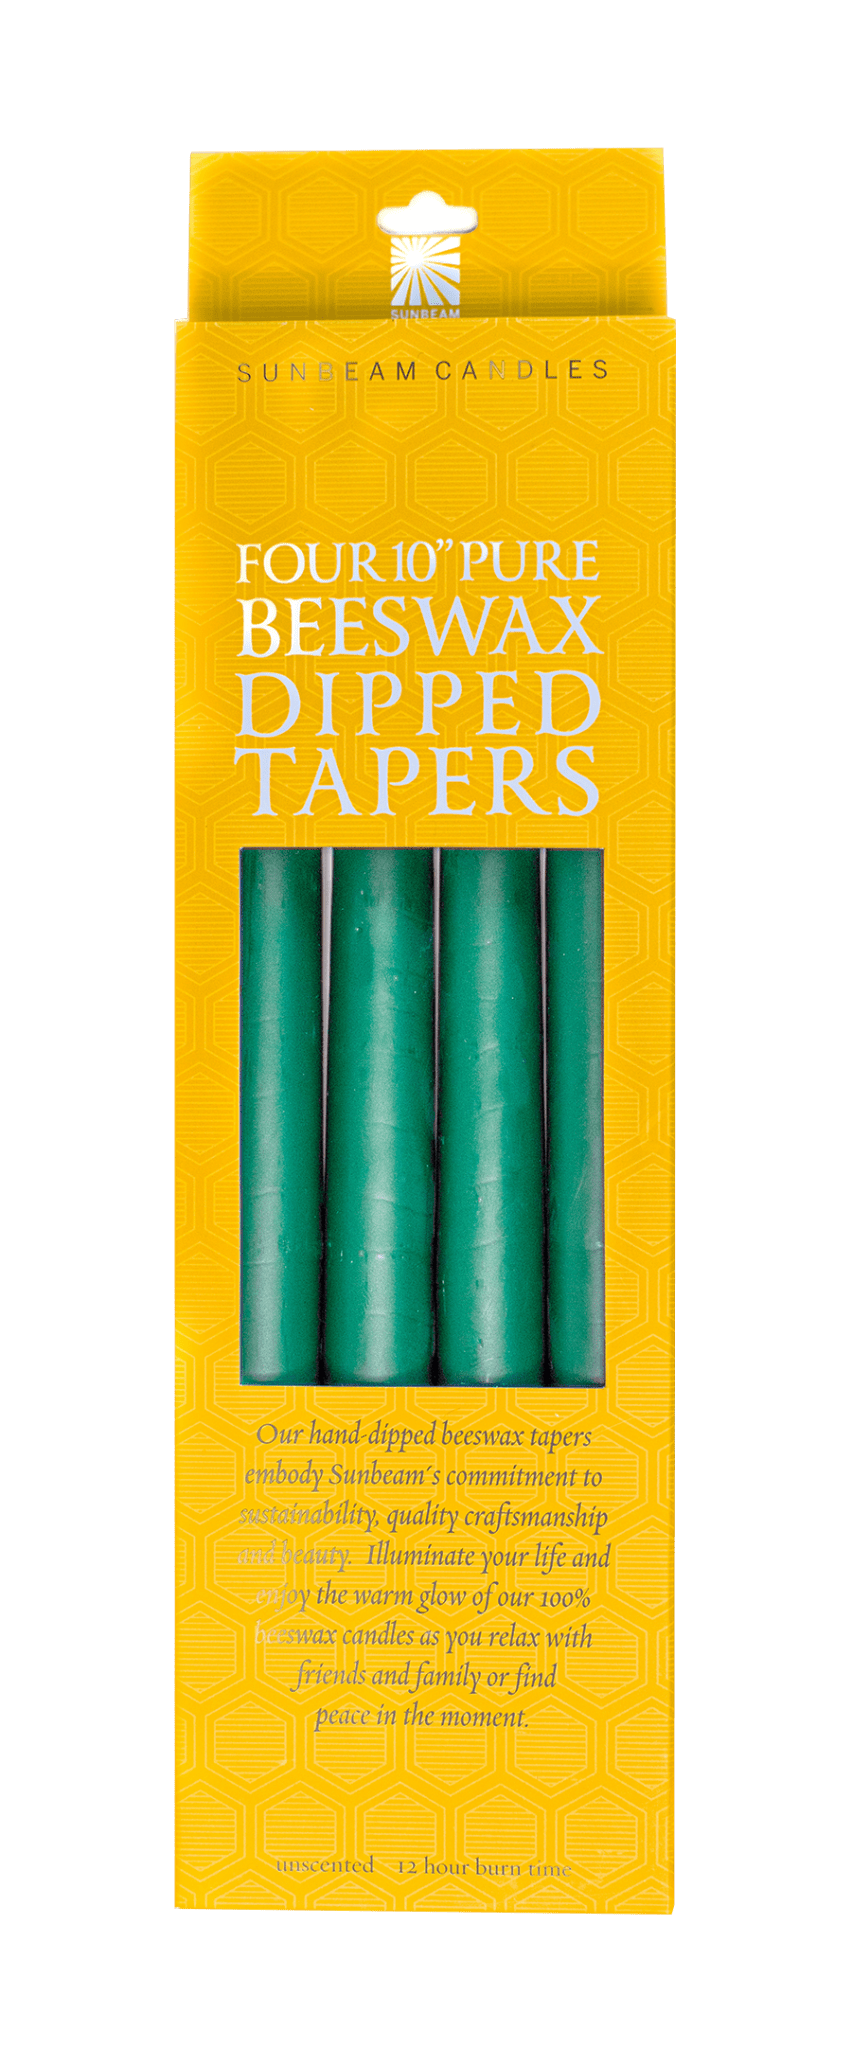 Beeswax 10